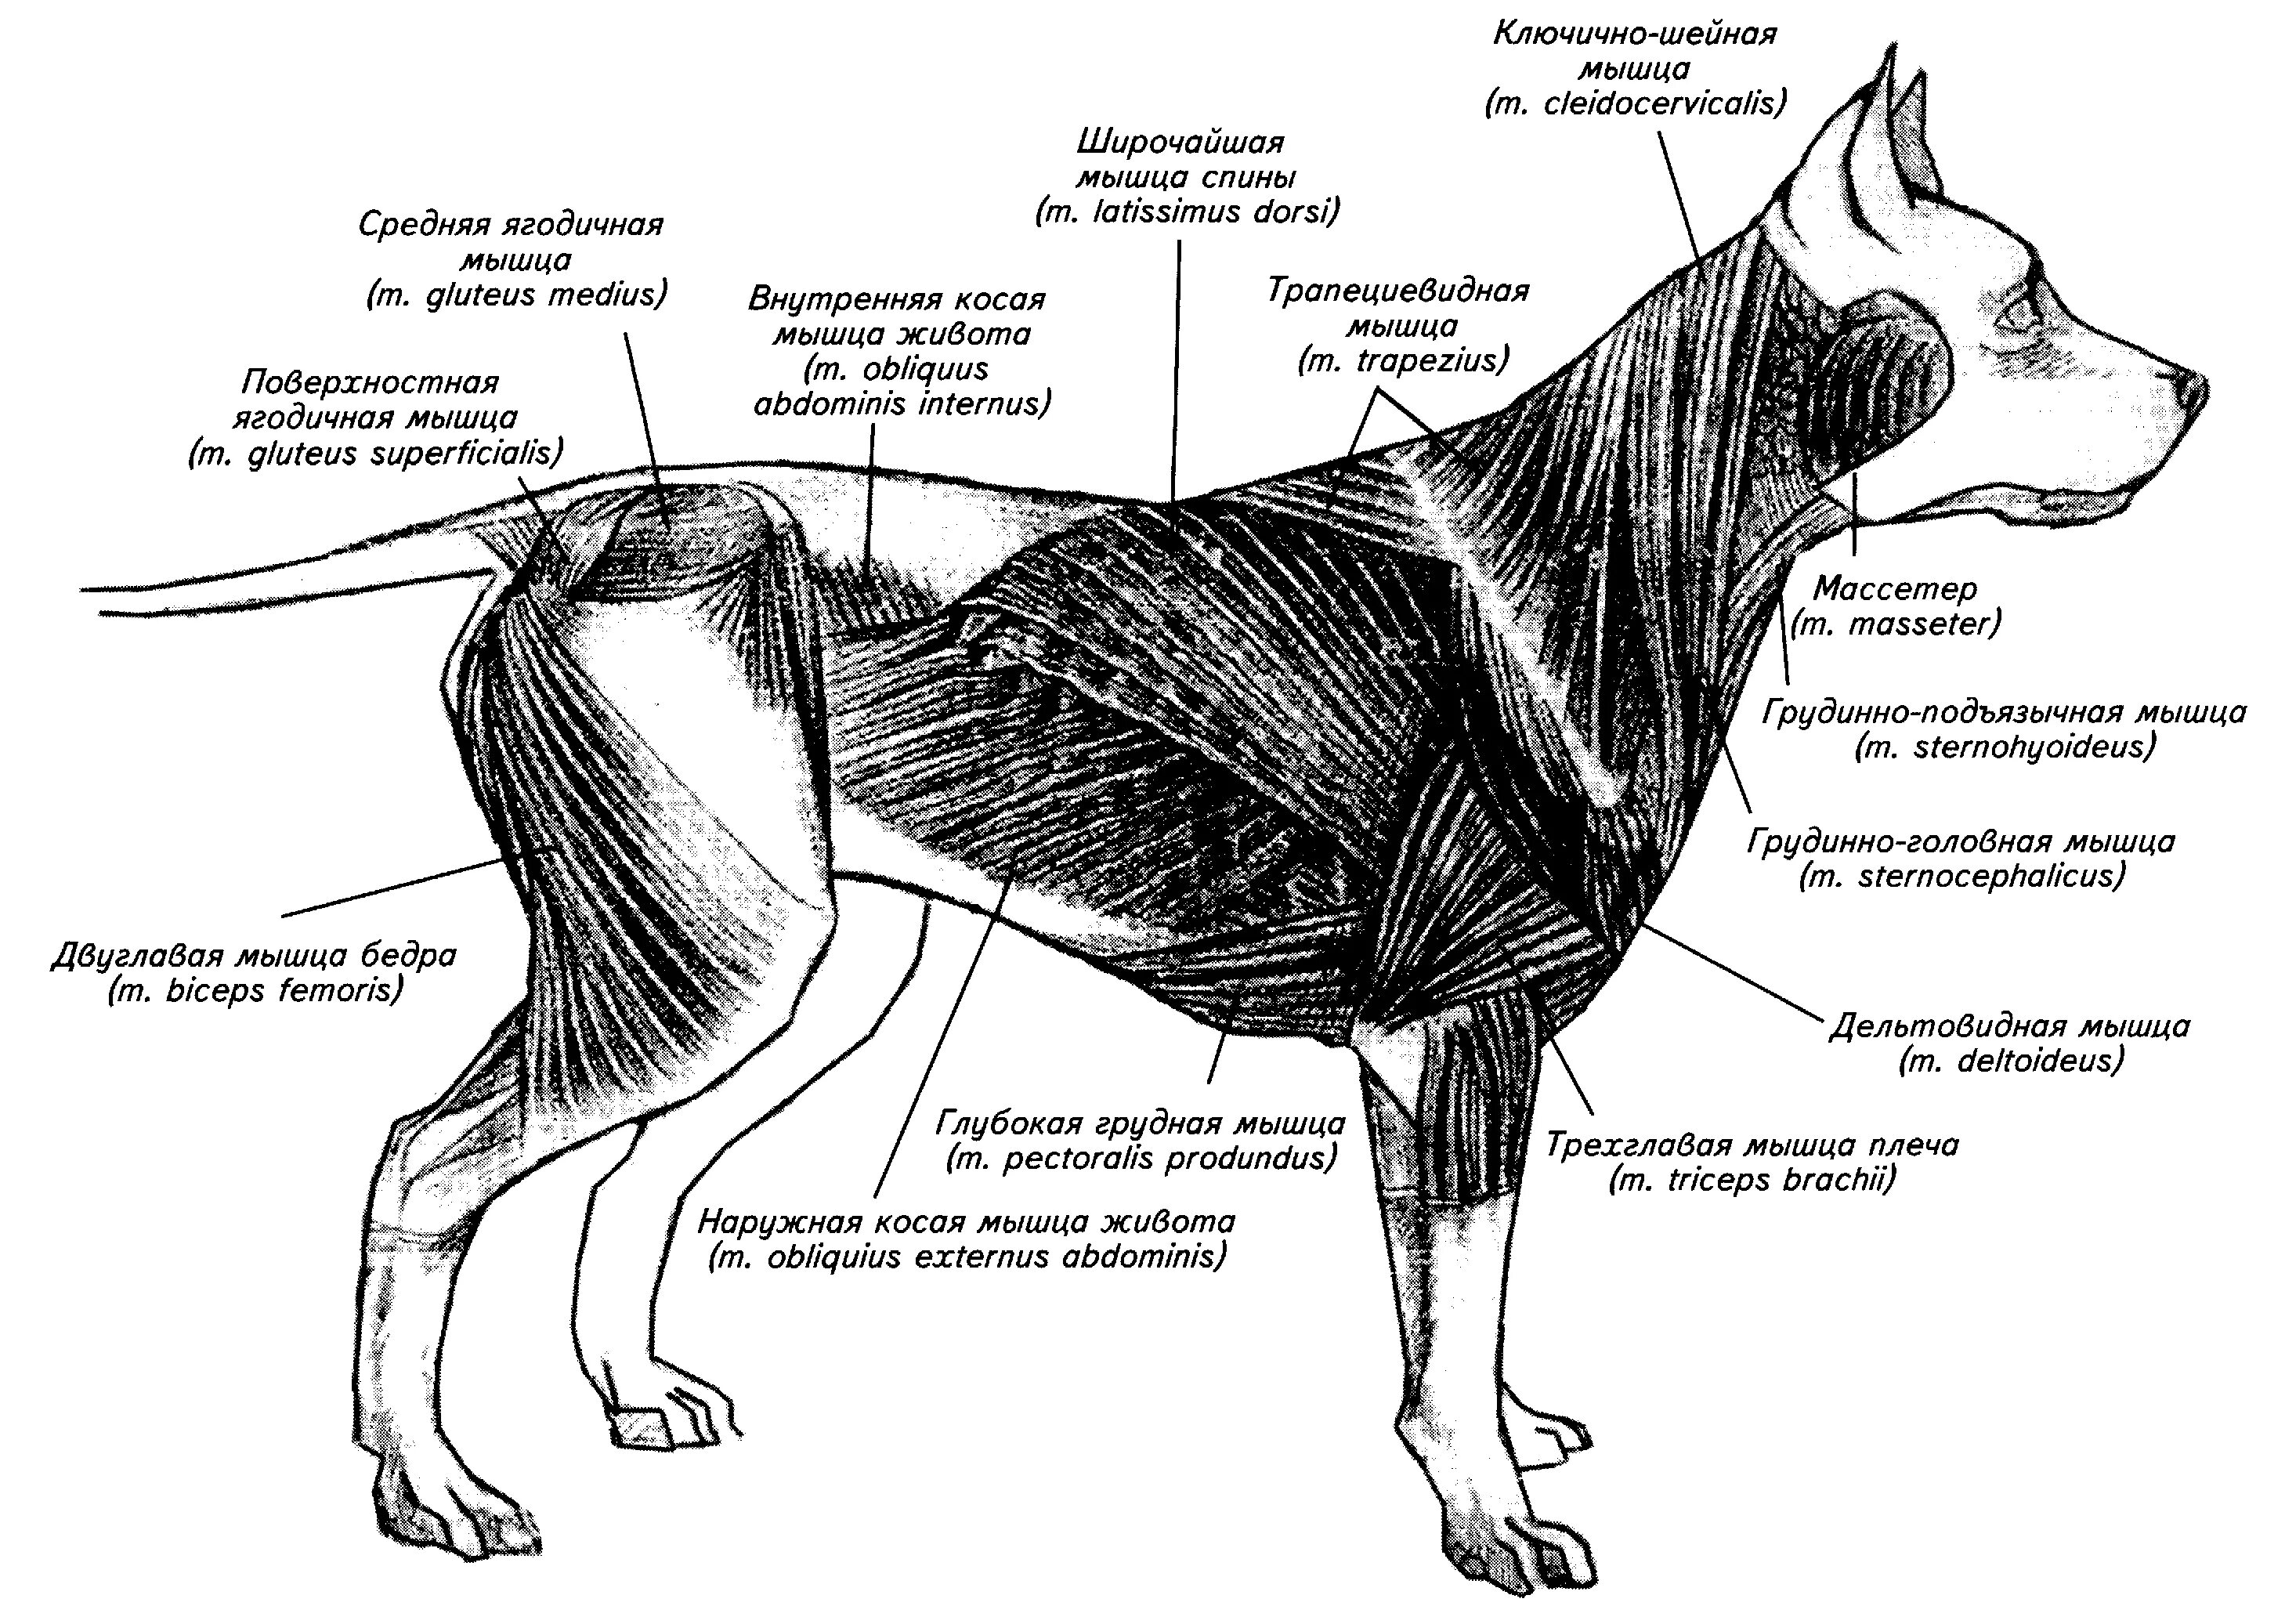 Мышцы туловища собаки анатомия. Мышцы собаки анатомия схема. Скелетно-мышечная система собаки. Каудальное направление